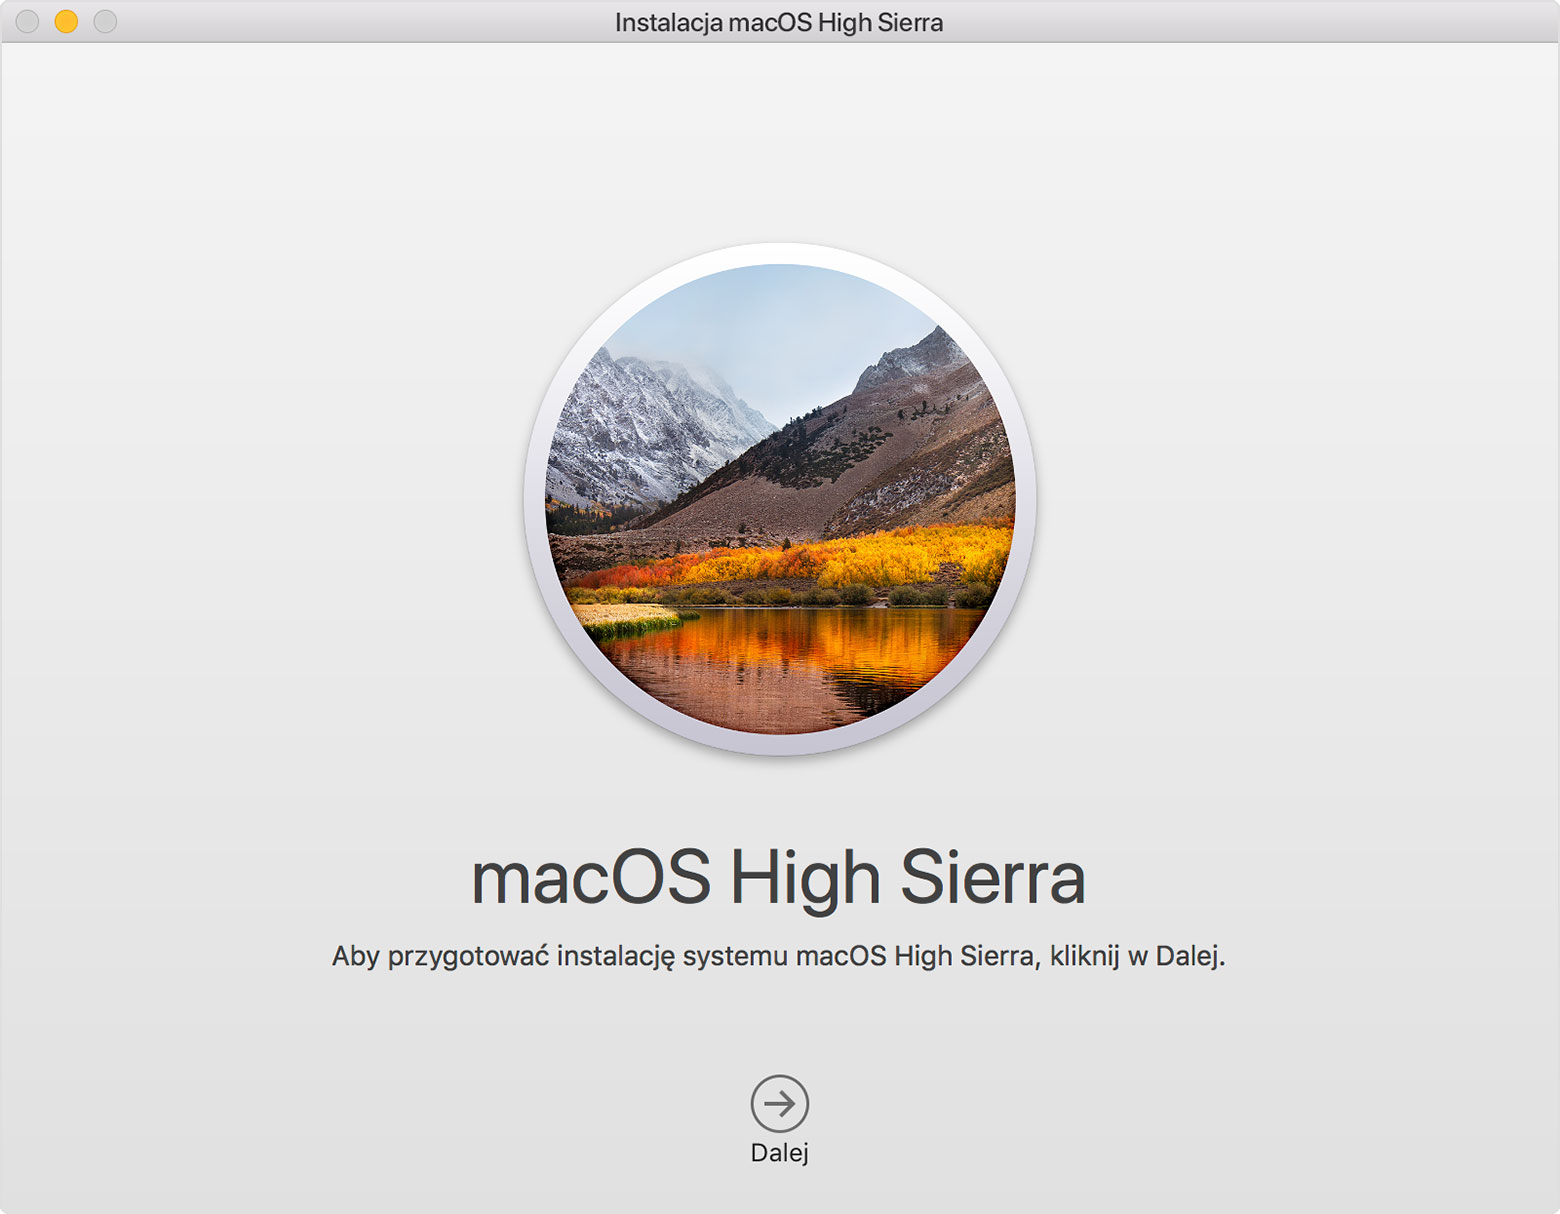 macos high sierra installer app